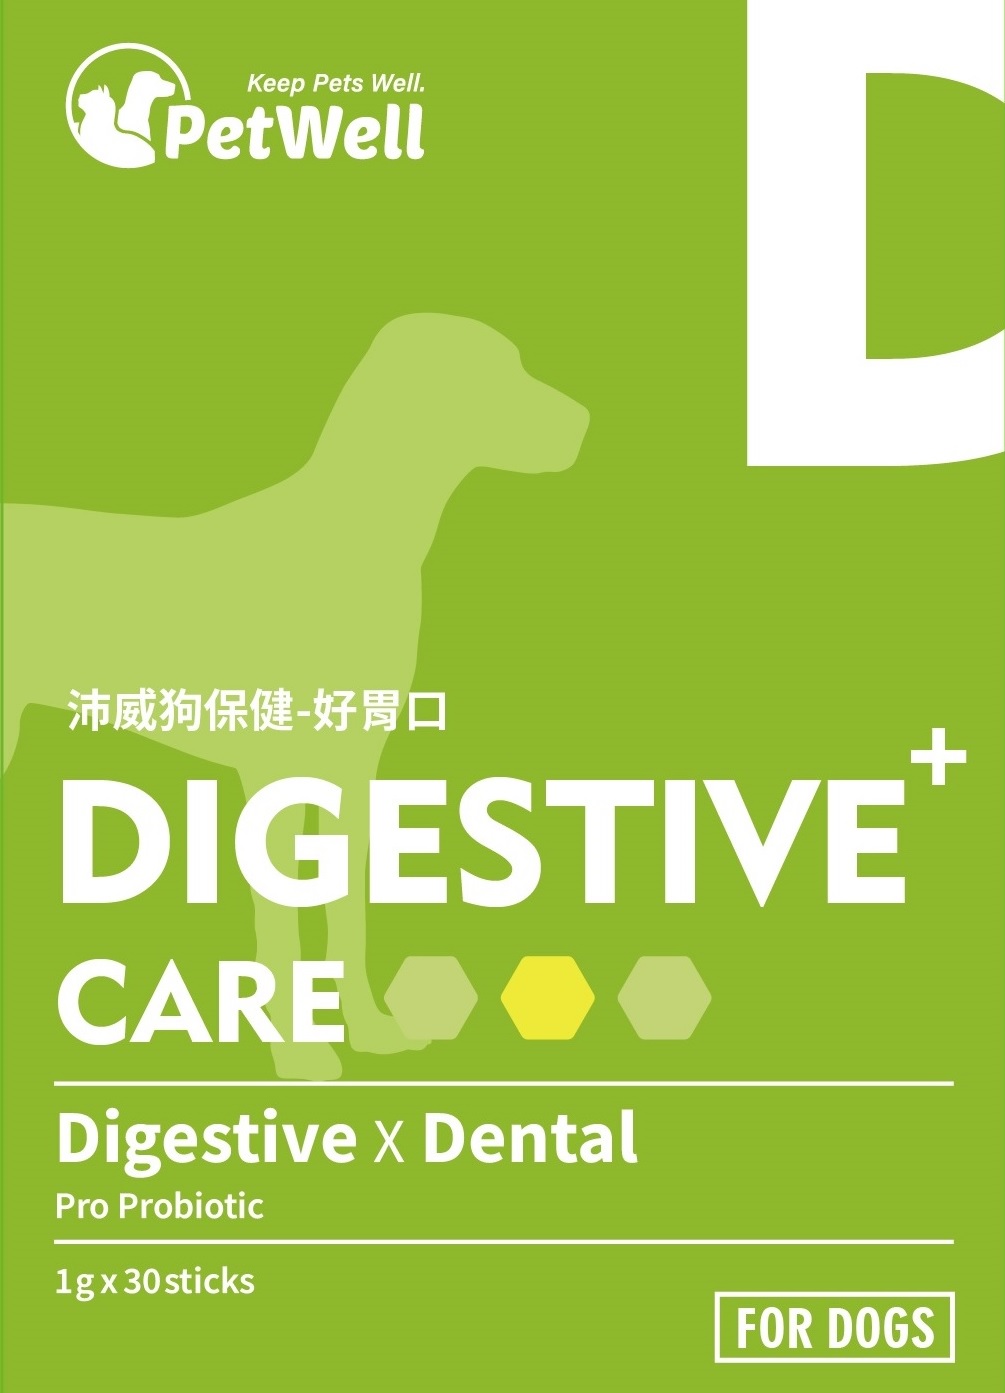 沛威狗保健-好胃口
DIGESTIVE+ CARE (For Dogs)